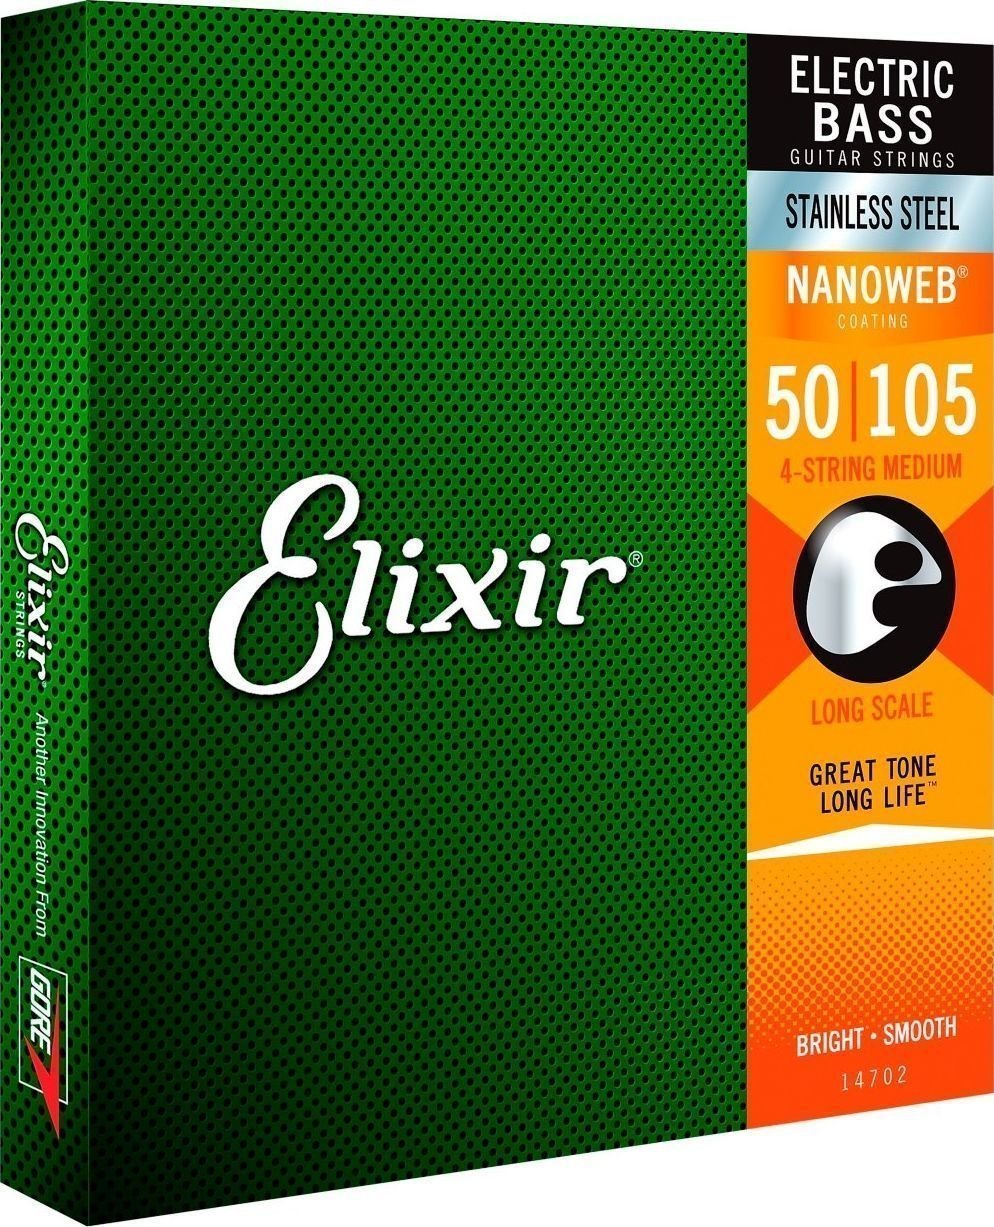 Elixir 14702 Nanoweb Elixir